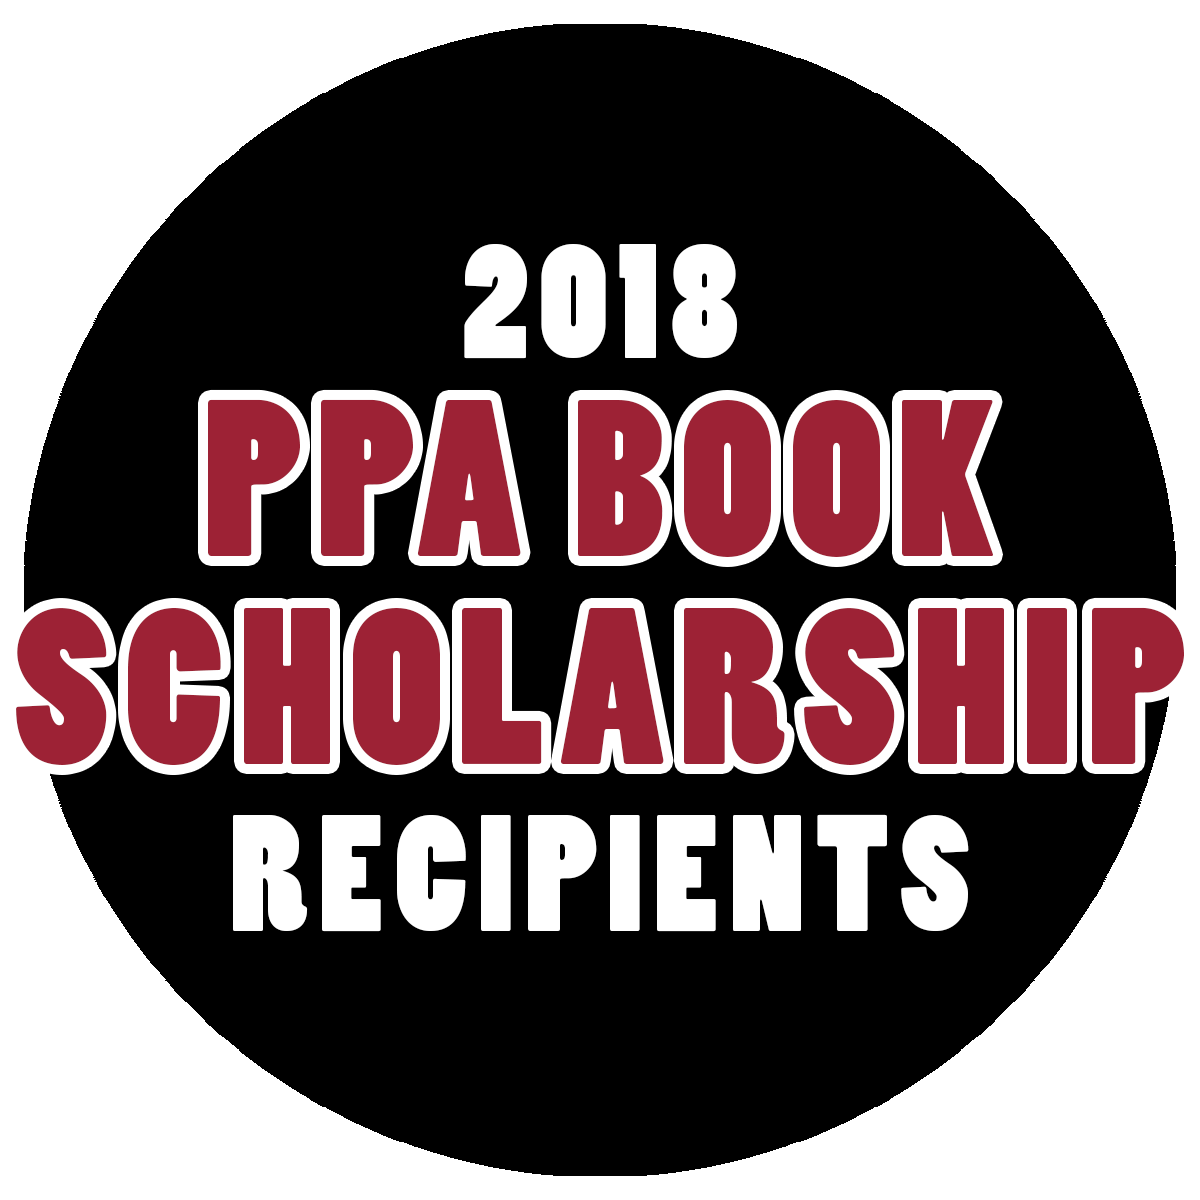 PPA Book Scholarship Recipients